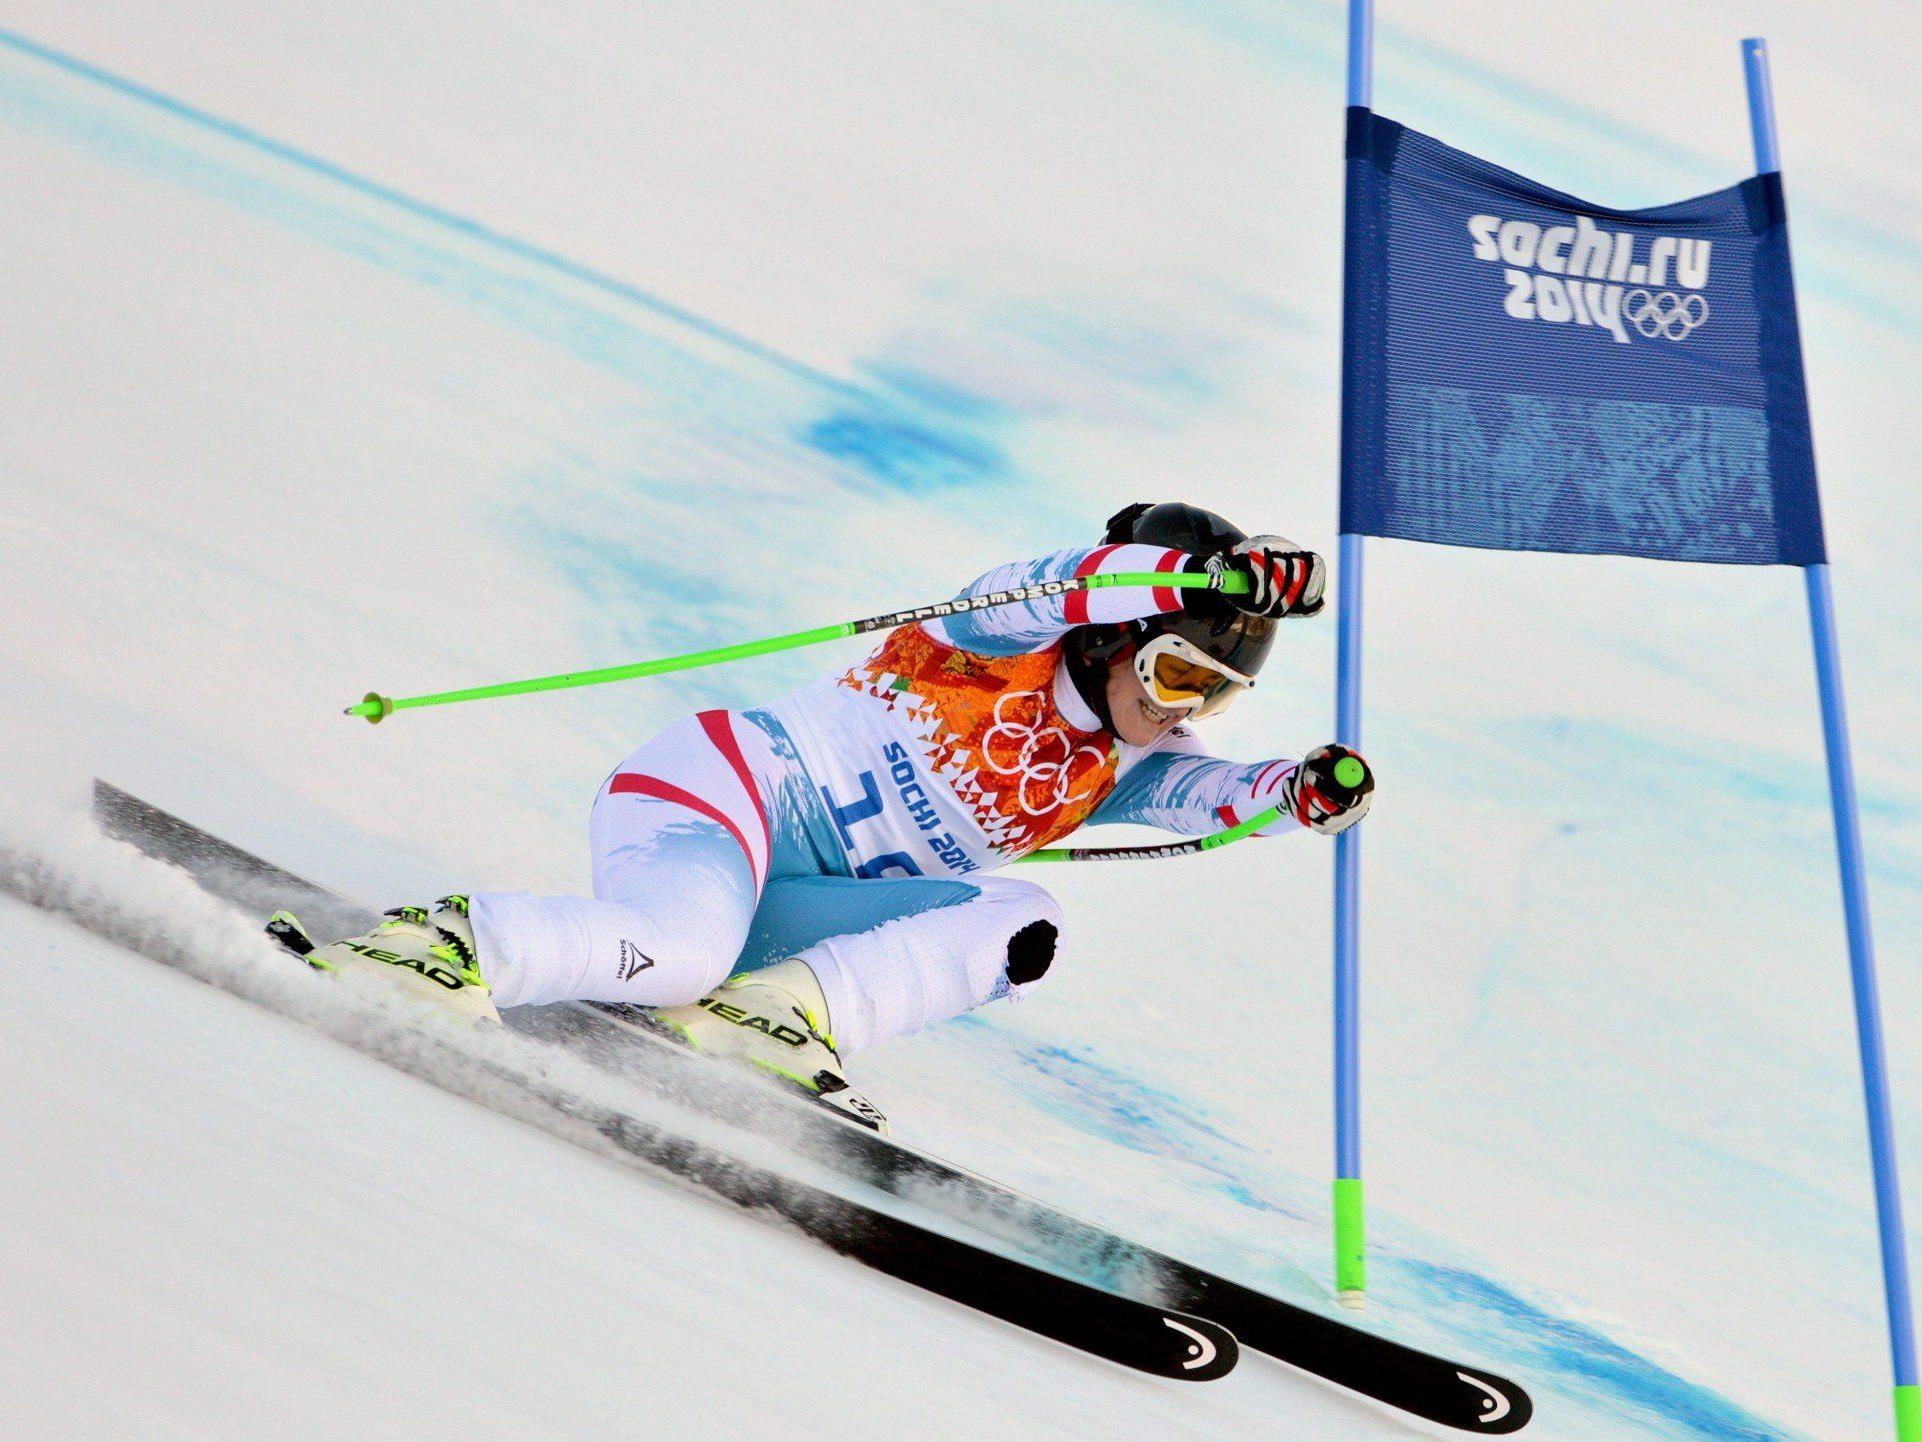 Damen-Riesentorlauf, Biathlon-Massenstart der Herren und Herren-Snowboard-Cross stehen am Programm.